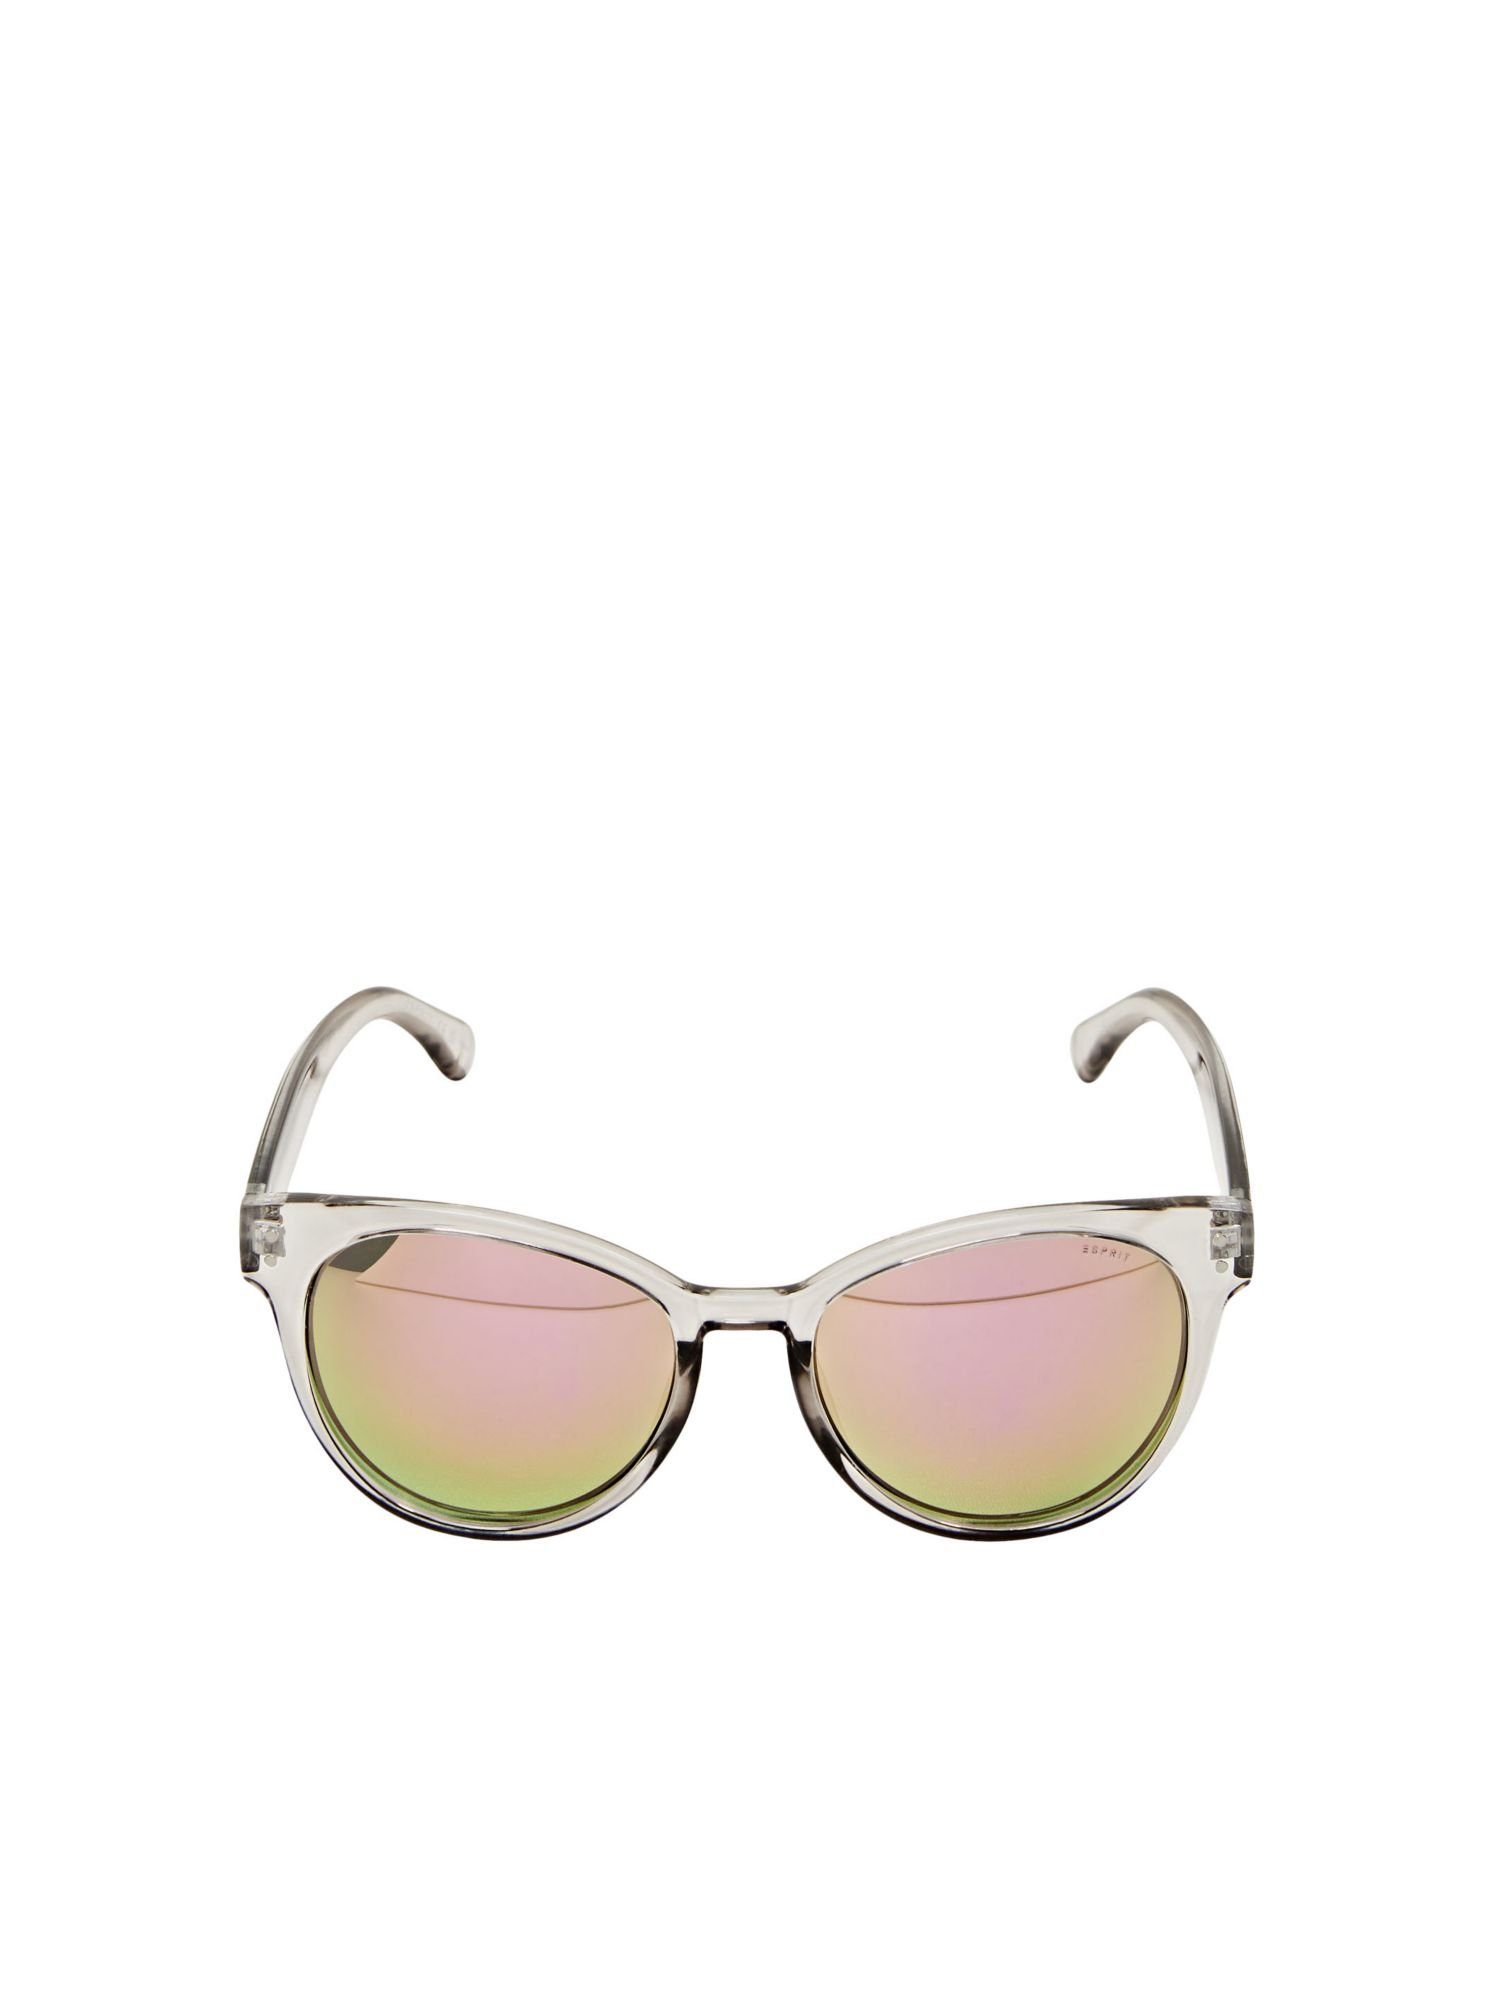 Esprit Sonnenbrille Sonnenbrille mit transparenter Fassung GRAY